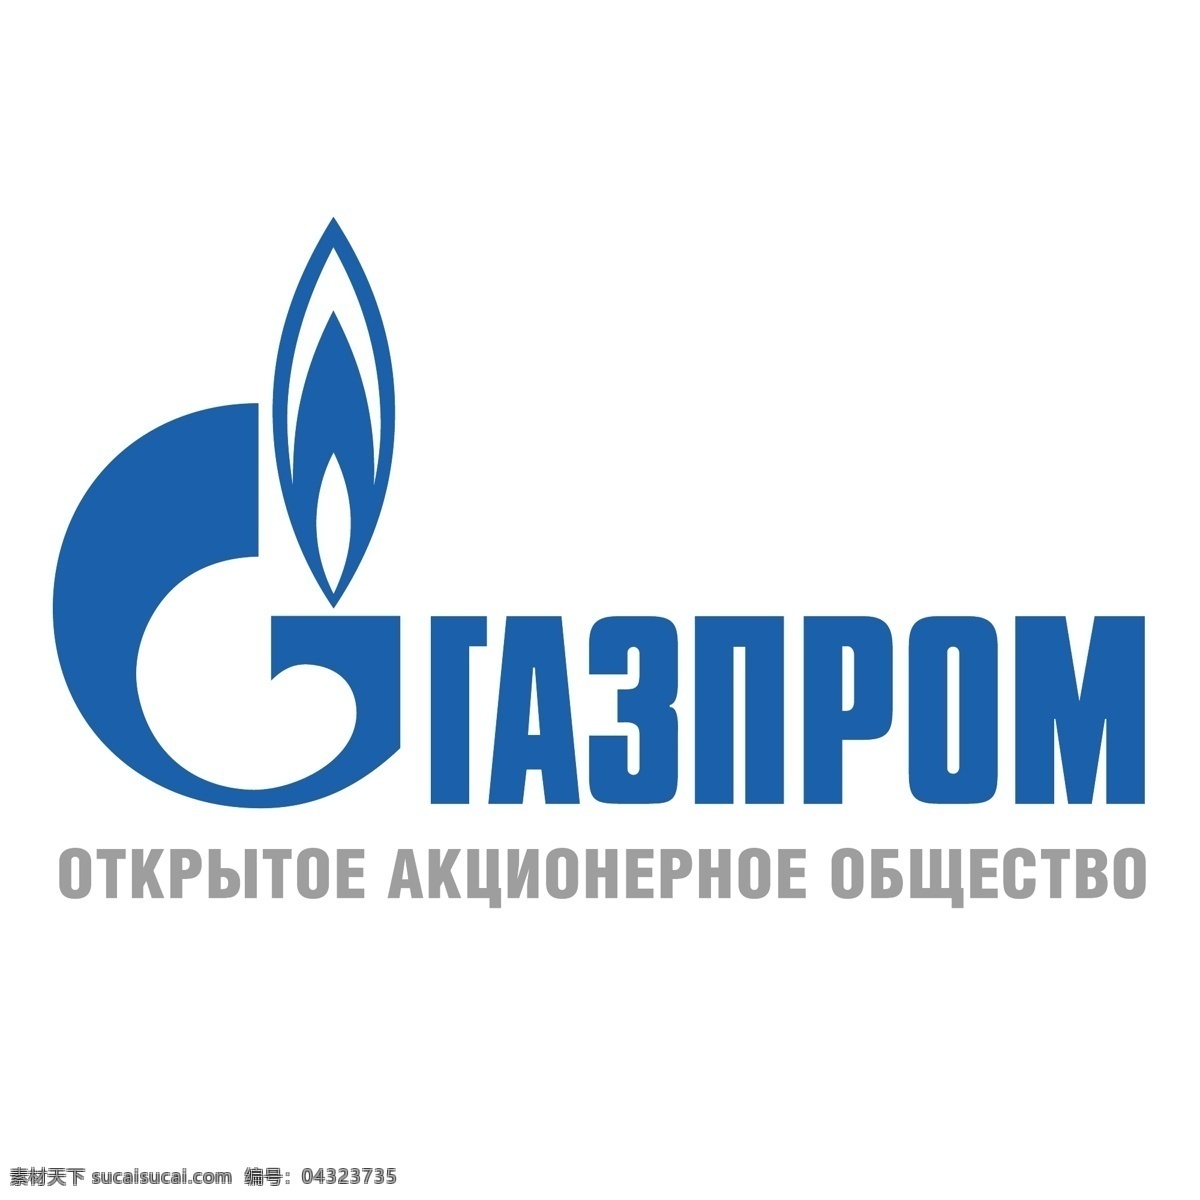 俄罗斯 天然气 工业 股份公司 标志 矢量 矢量图 建筑家居